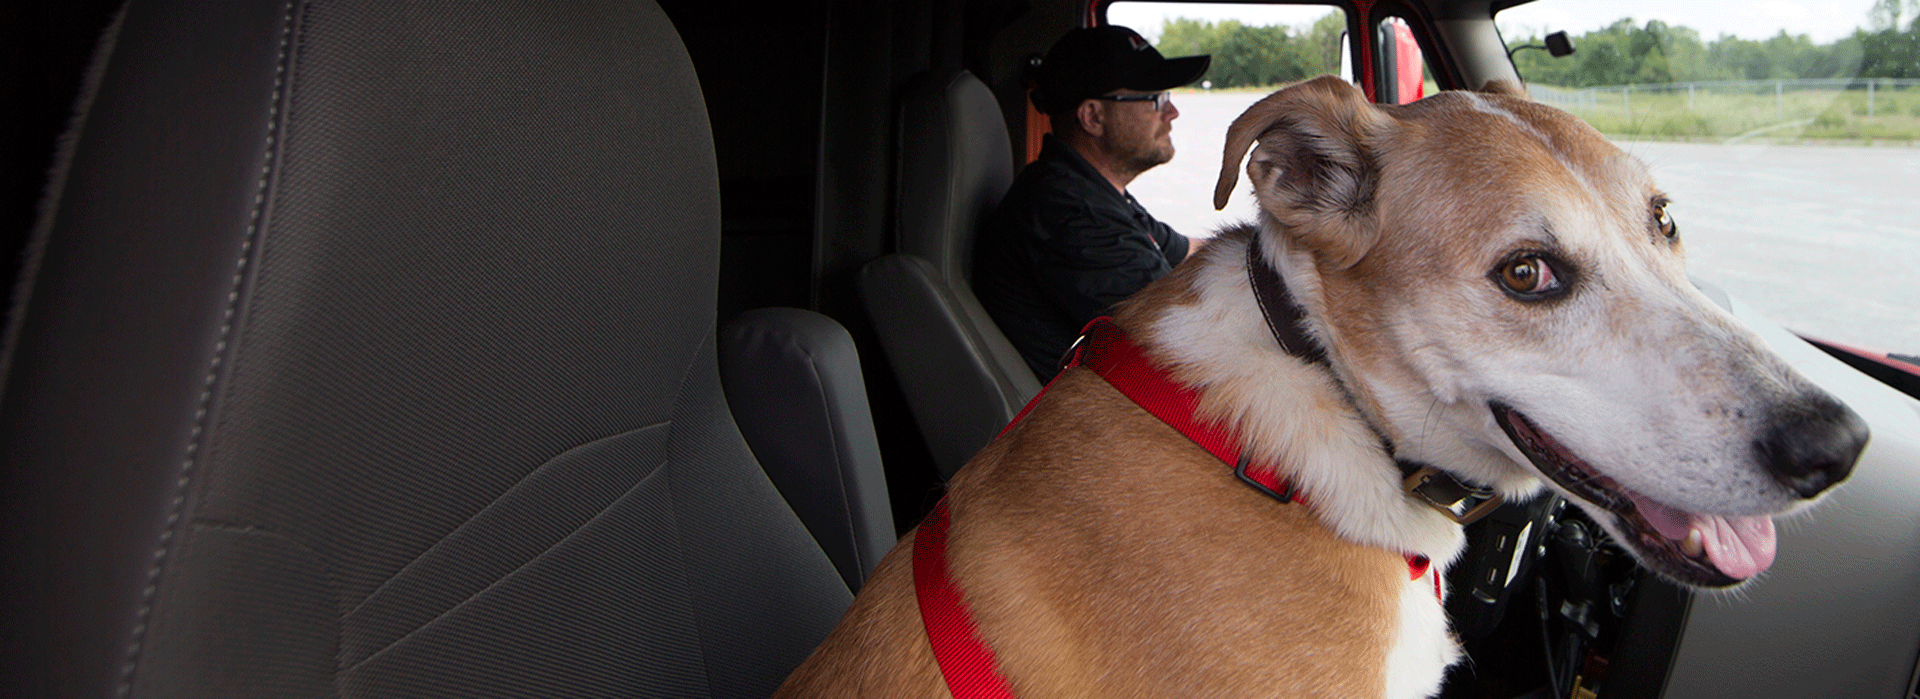 dog in passenger seat